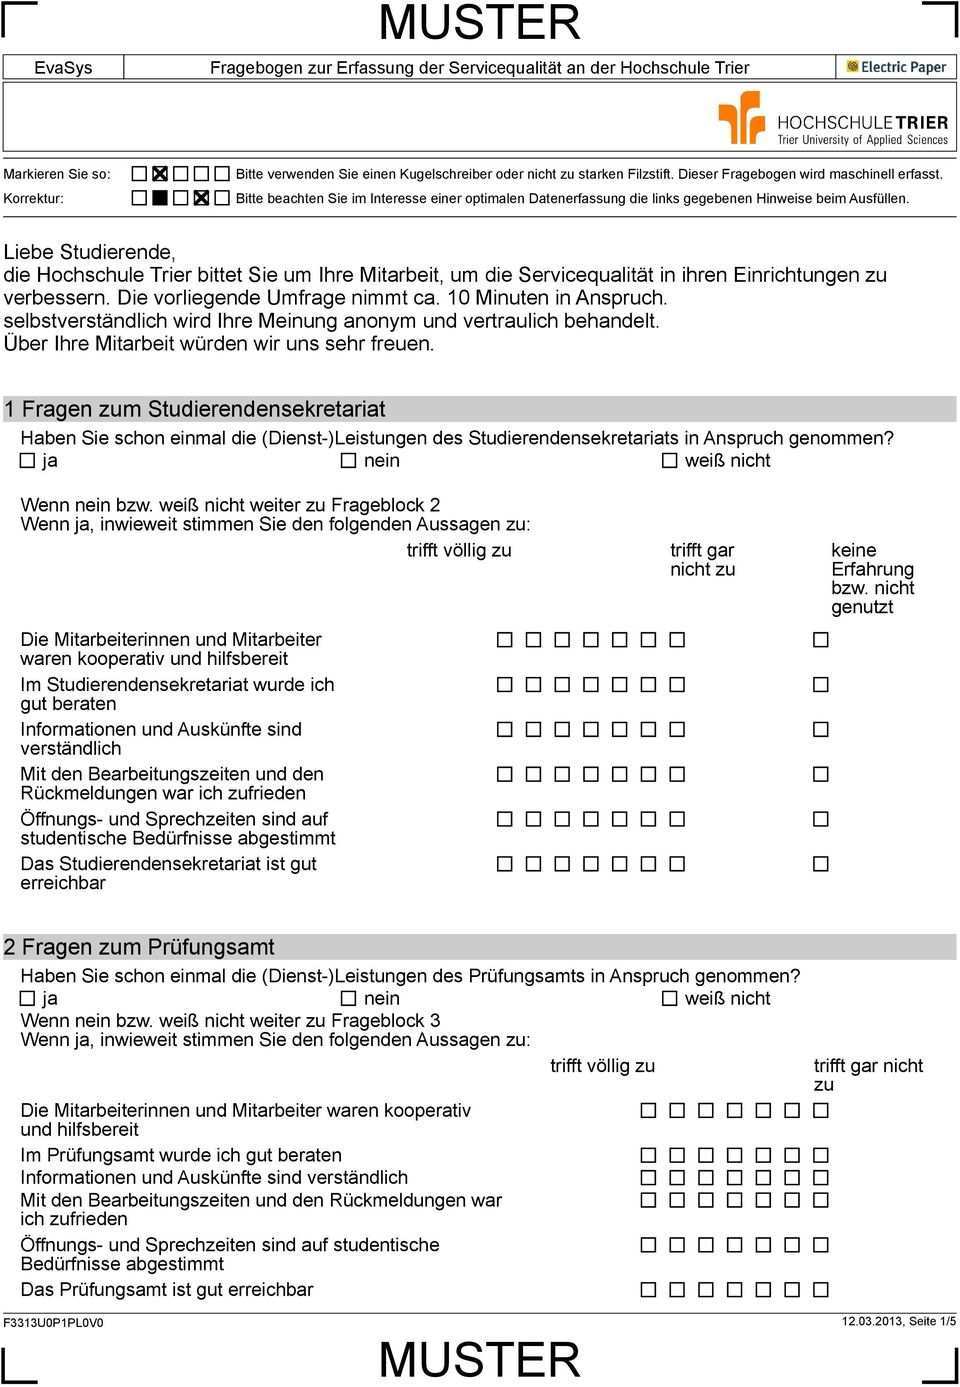 Muster Fragebogen Zur Erfassung Der Servicequalitat An Der Hochschule Trier Pdf Free Download